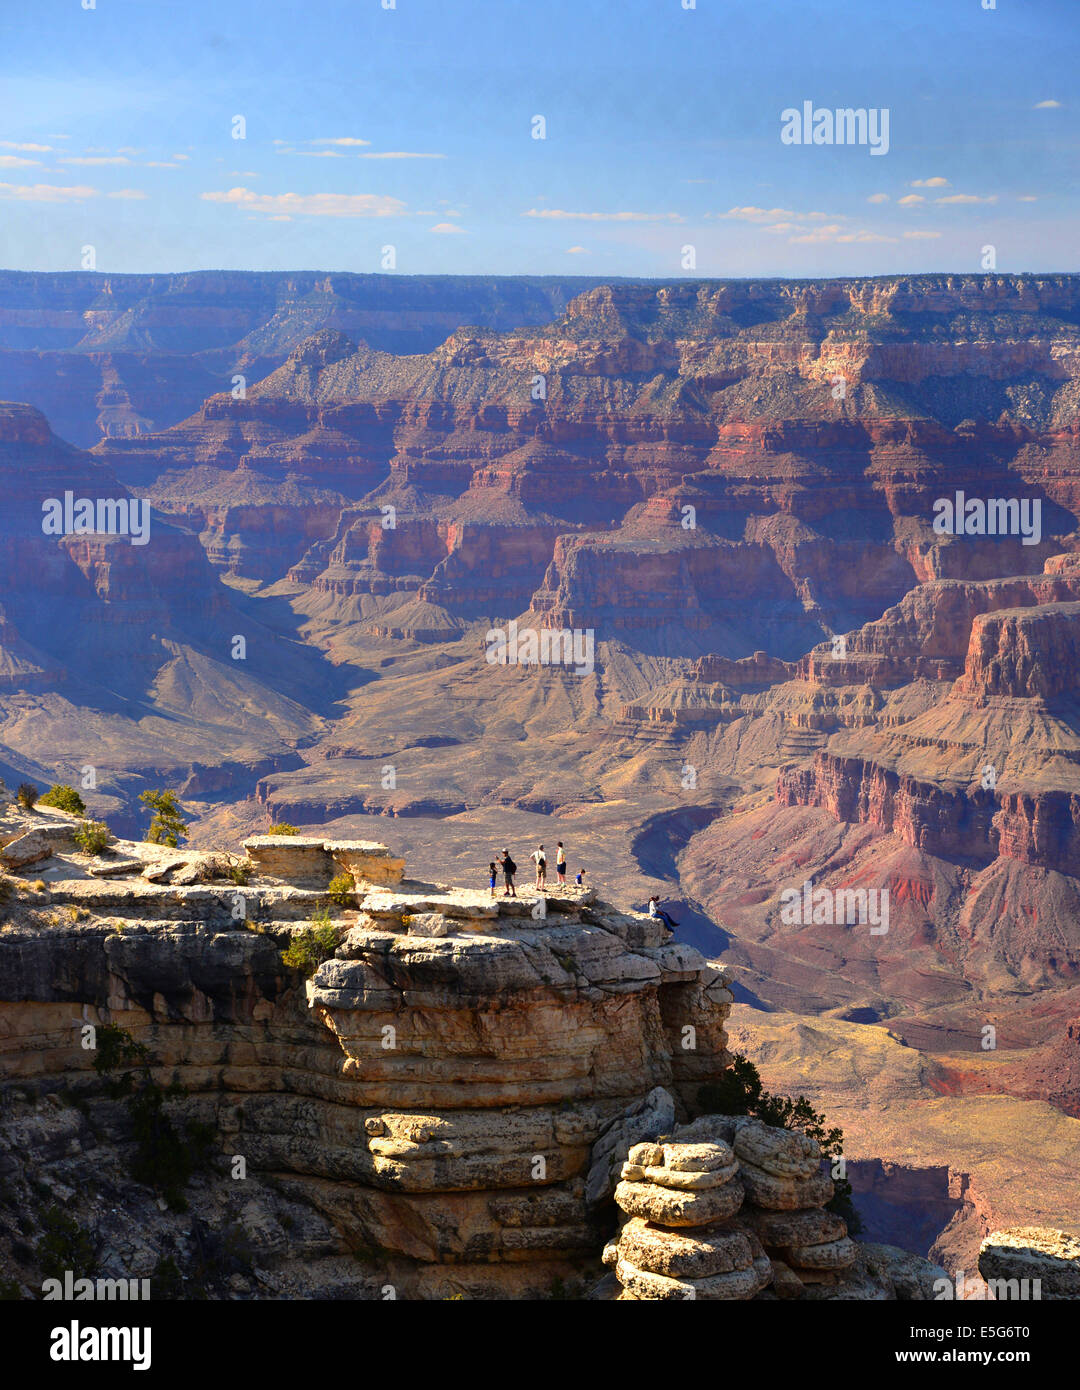 L'enorme dimensione del canyon è sottolineata dal apparentemente piccolo figure umane contro lo sfondo della vista del canyon. Foto Stock